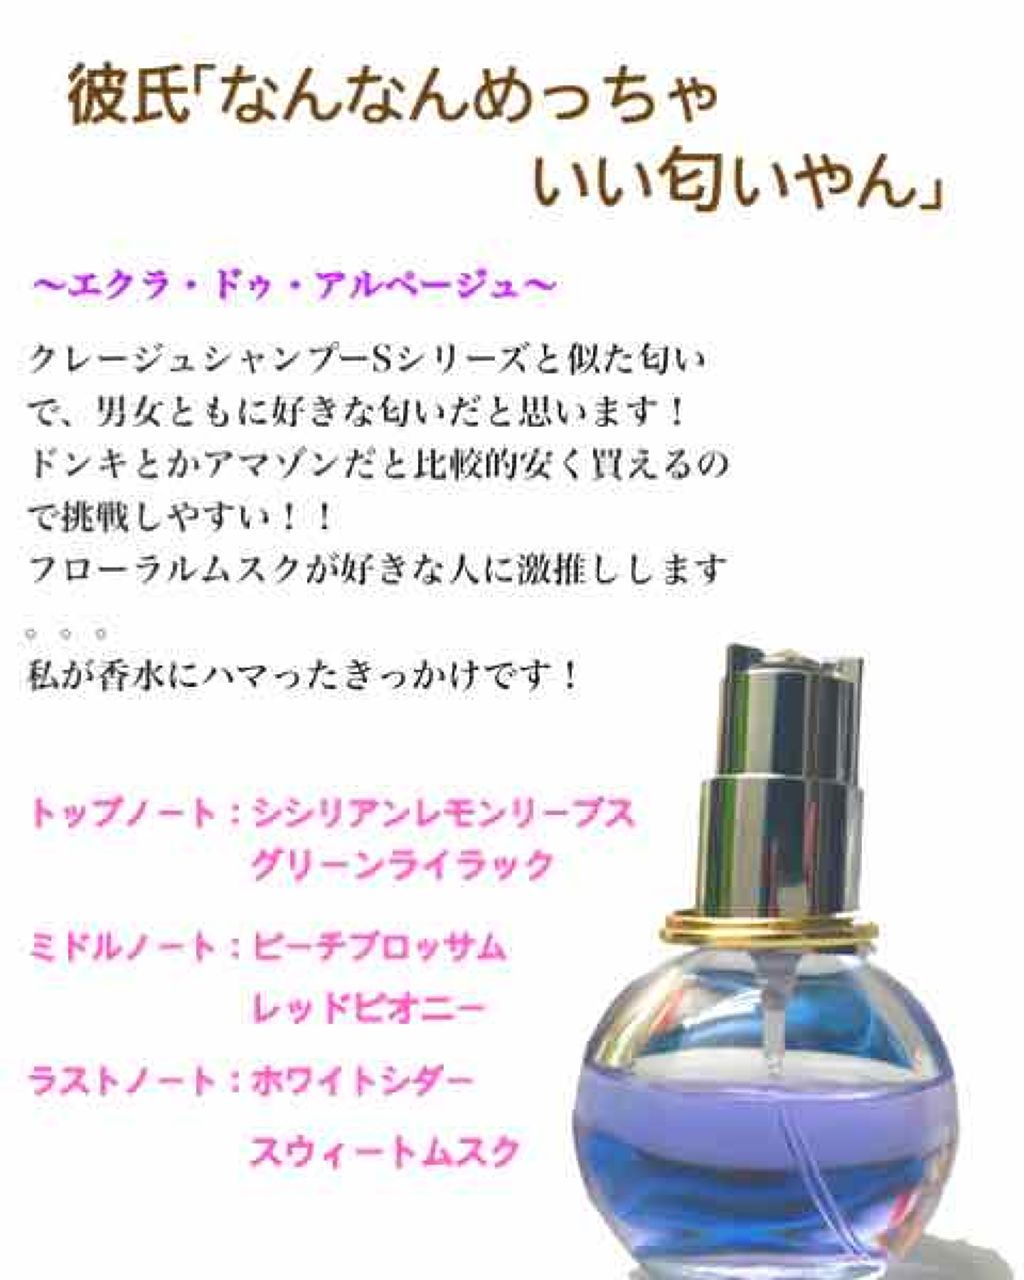 あたり 買う やる 匂い 香水 Smartcare Tachibana Jp